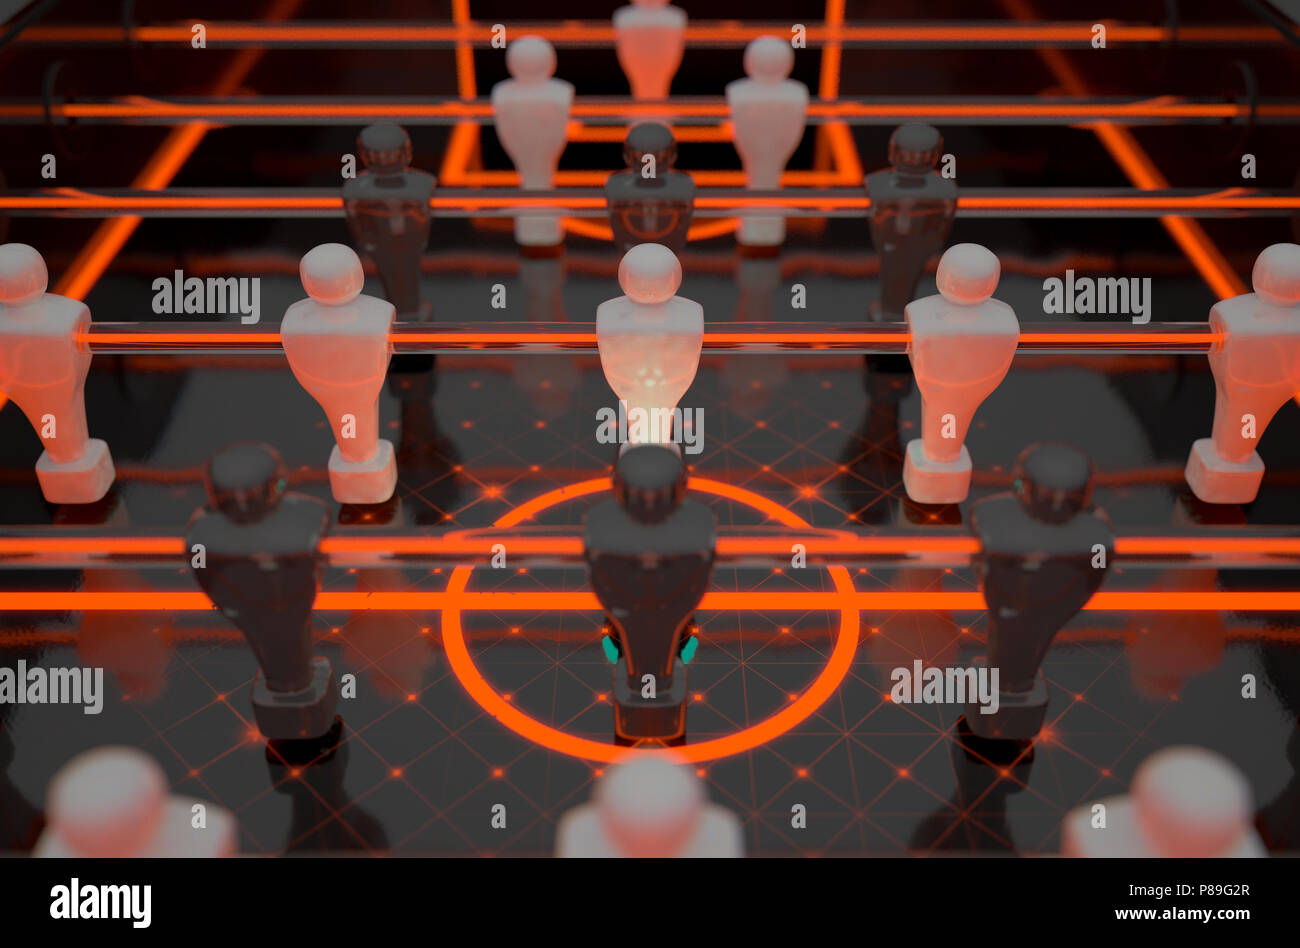 Eine Nahaufnahme Aussehen der Figuren eines futuristischen foosball Tabelle beleuchtet durch dramatische leuchtende Markierungen und Beleuchtung - 3D-Rendering Stockfoto